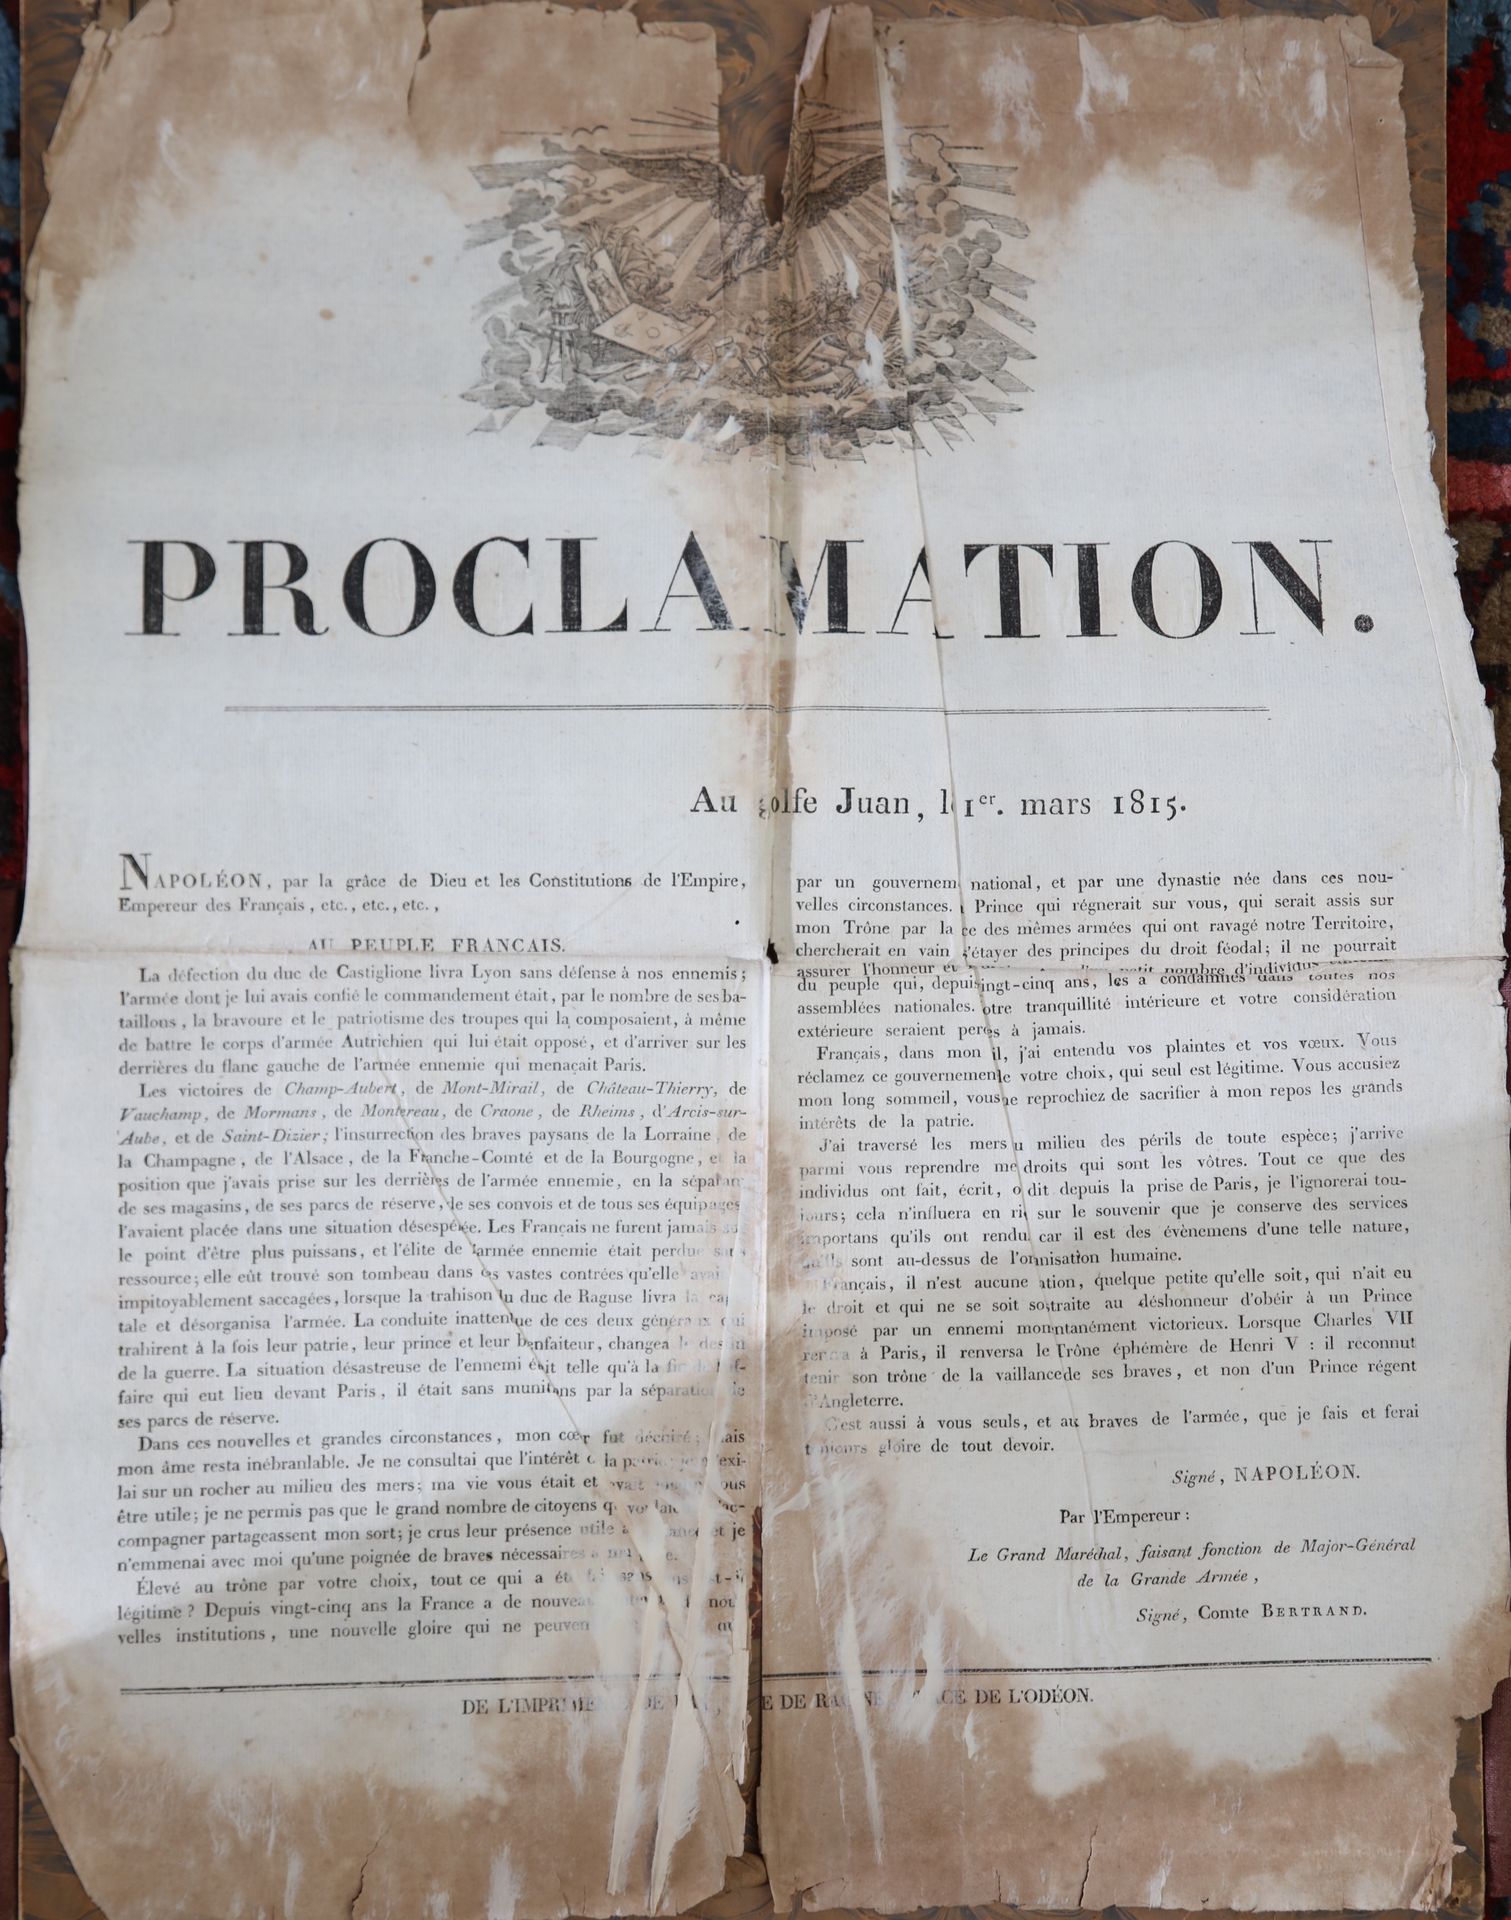 Null Documentos: juicio de 1812 - Proclamación de 1815 y pequeño lote de sellos &hellip;